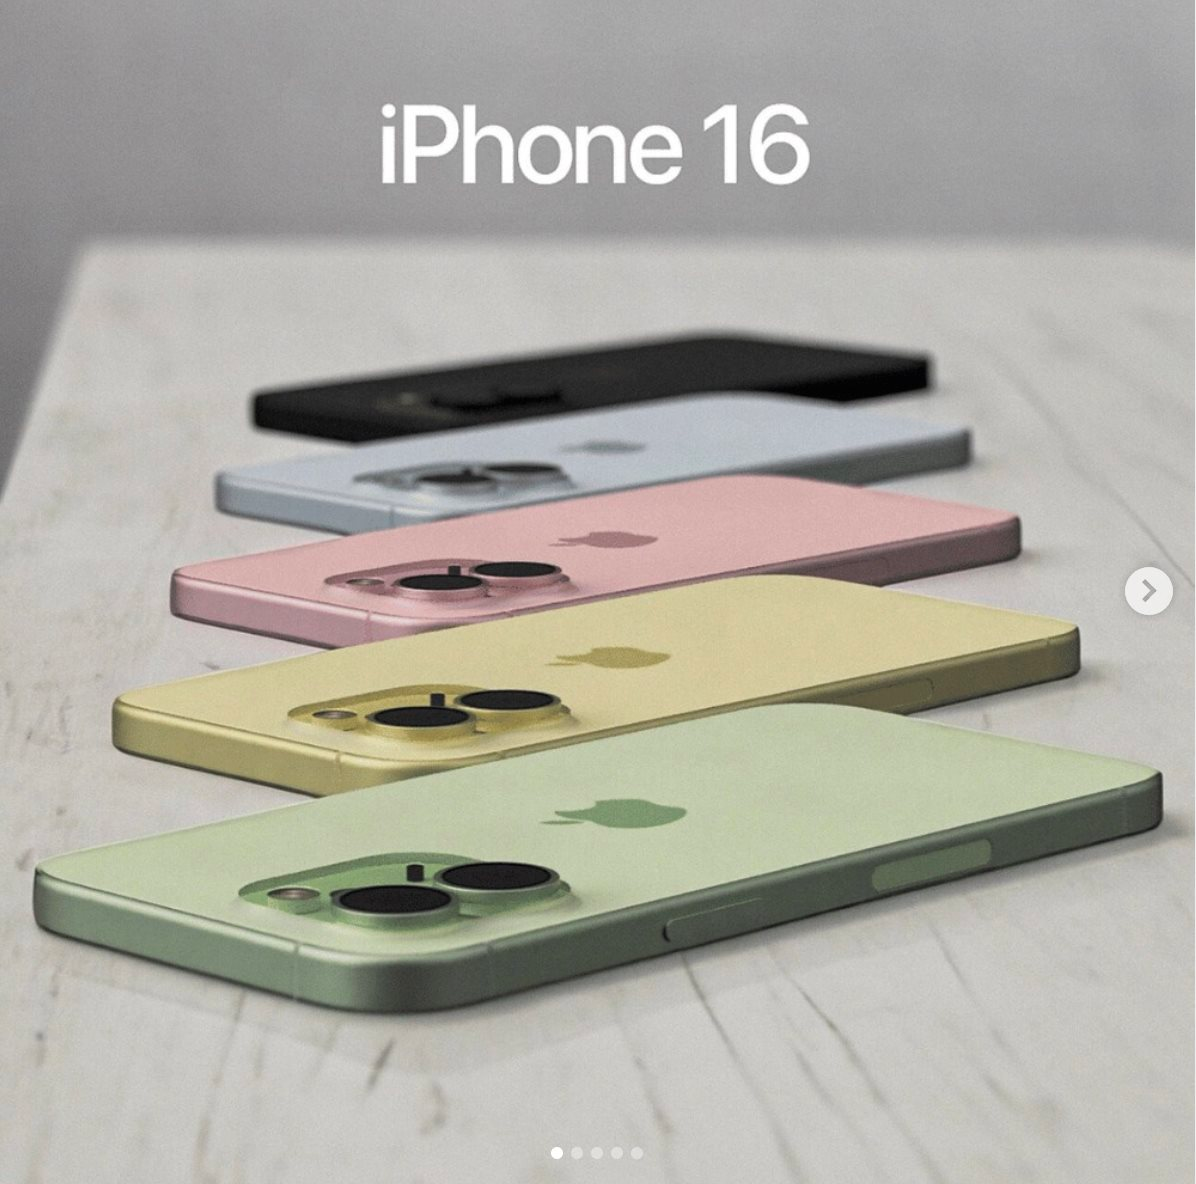 Ngắm iPhone 16 màu xanh lá cây - Ảnh 2.